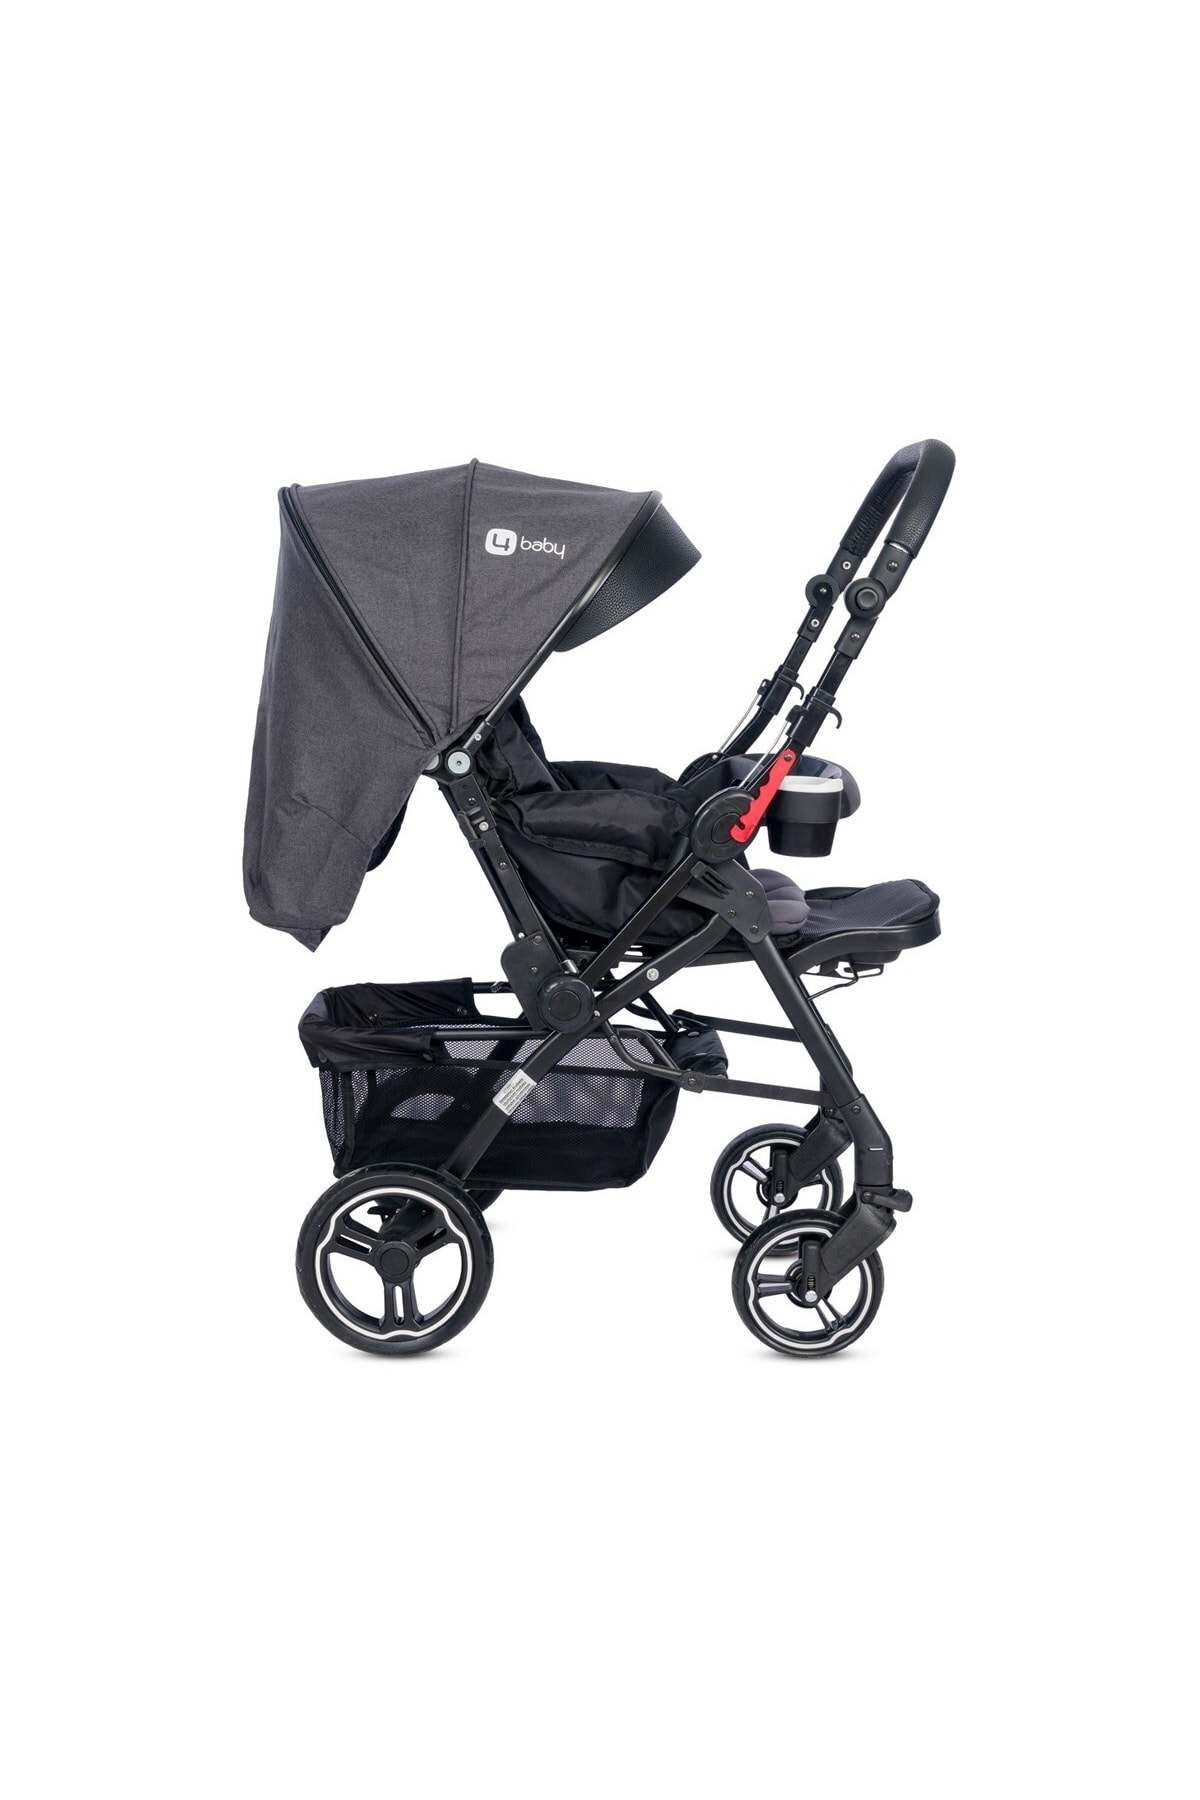 MUTLU BEBE 4 Baby Active Plus Black Çift Yönlü Travel Sistem Bebek Arabası OH10792